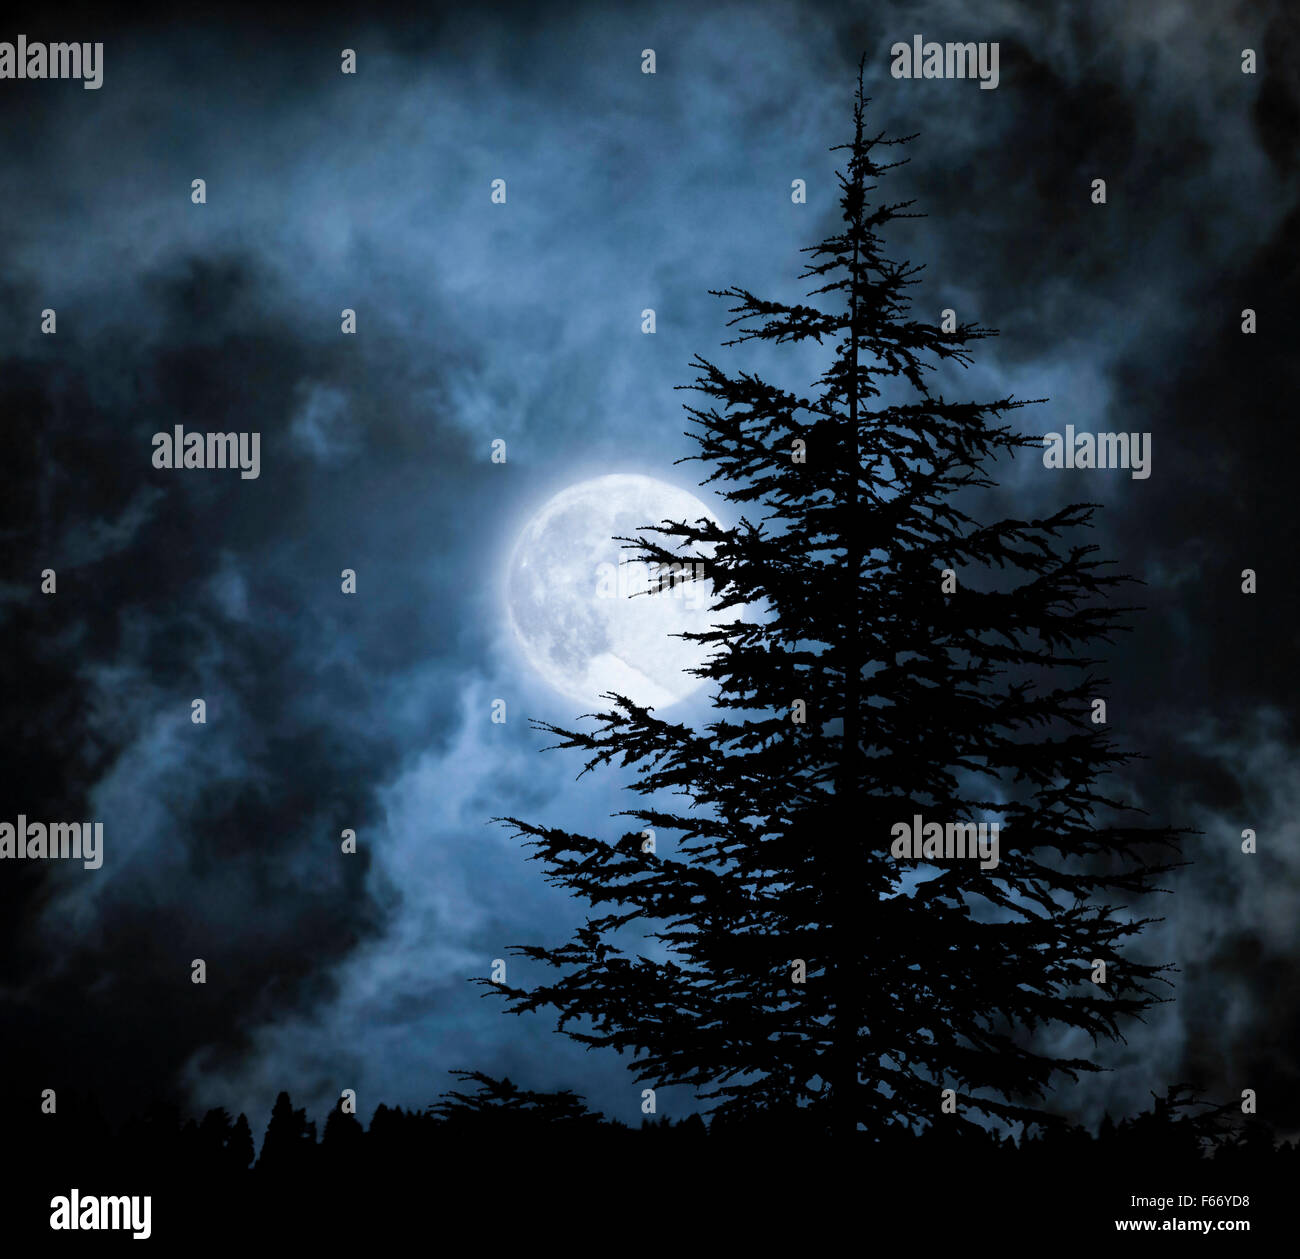 Paesaggio magico con pino drammatica sotto il cielo nuvoloso durante la luna piena Foto Stock